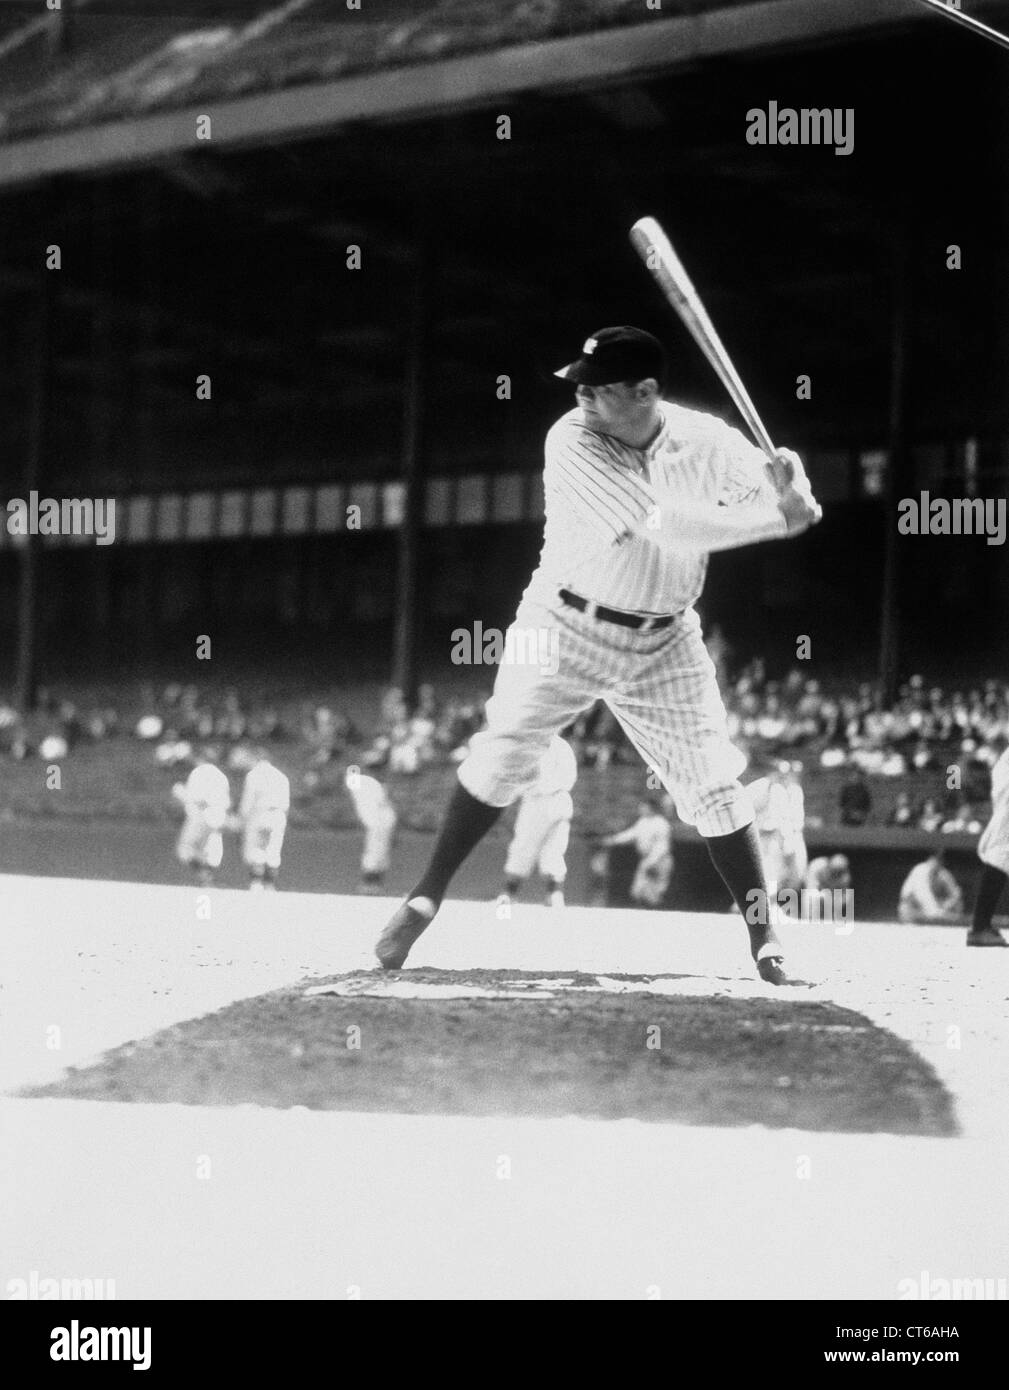 Babe Ruth at bat, 1934 Stock Photo